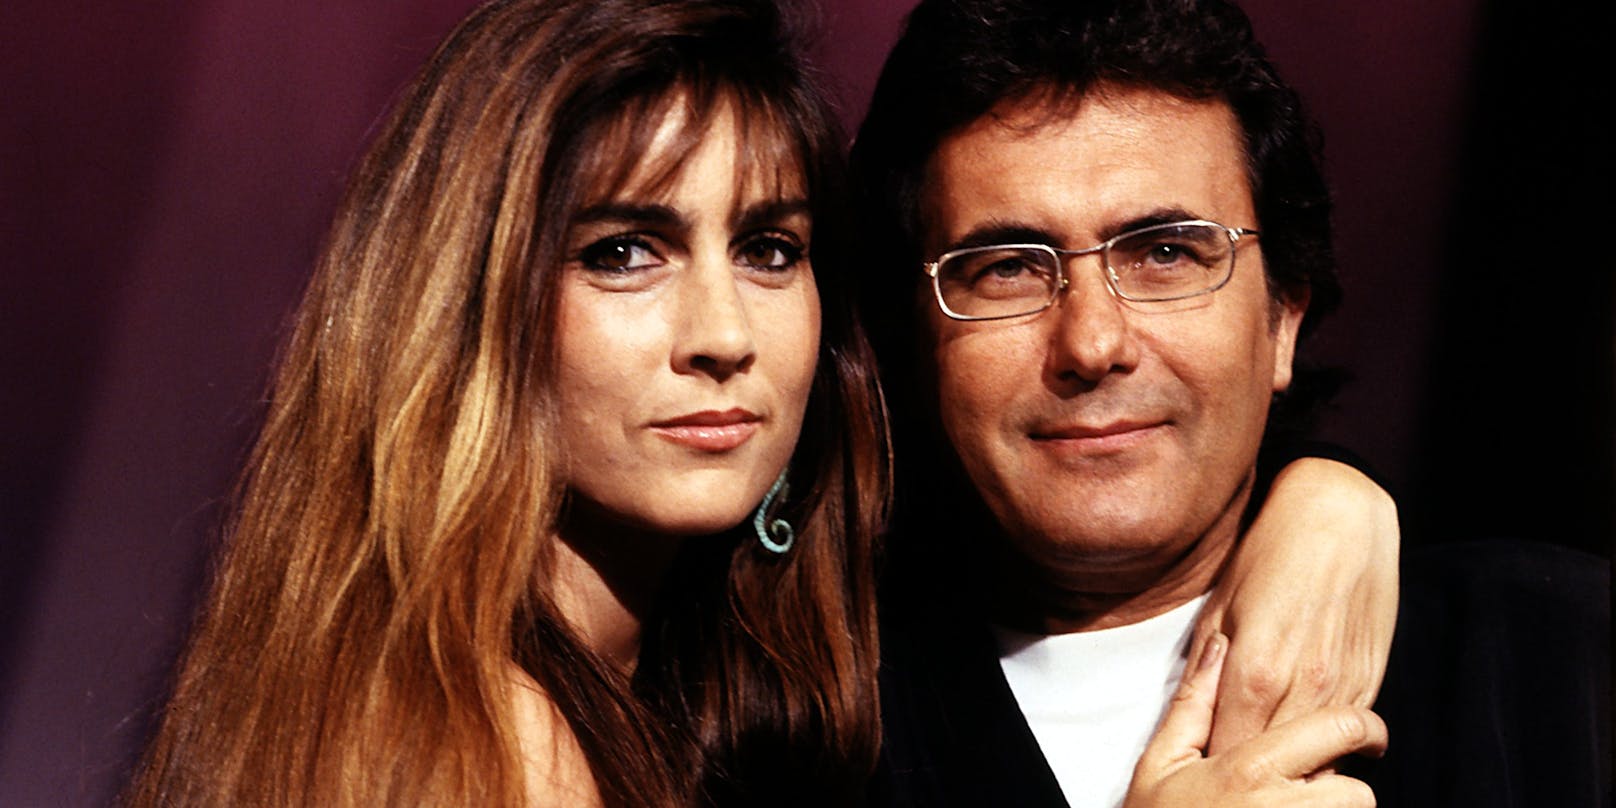 Ihre erfolgreichste Zeit hatten sie in den 1980er Jahren. Mit "Felicità" erreichten sie den zweiten Rang beim Sanremo-Festival 1982. Sie gewannen das Festival 1984 mit "Ci sarà", und 1985 traten sie erneut beim Grand Prix mit "Magic Oh Magic" auf.